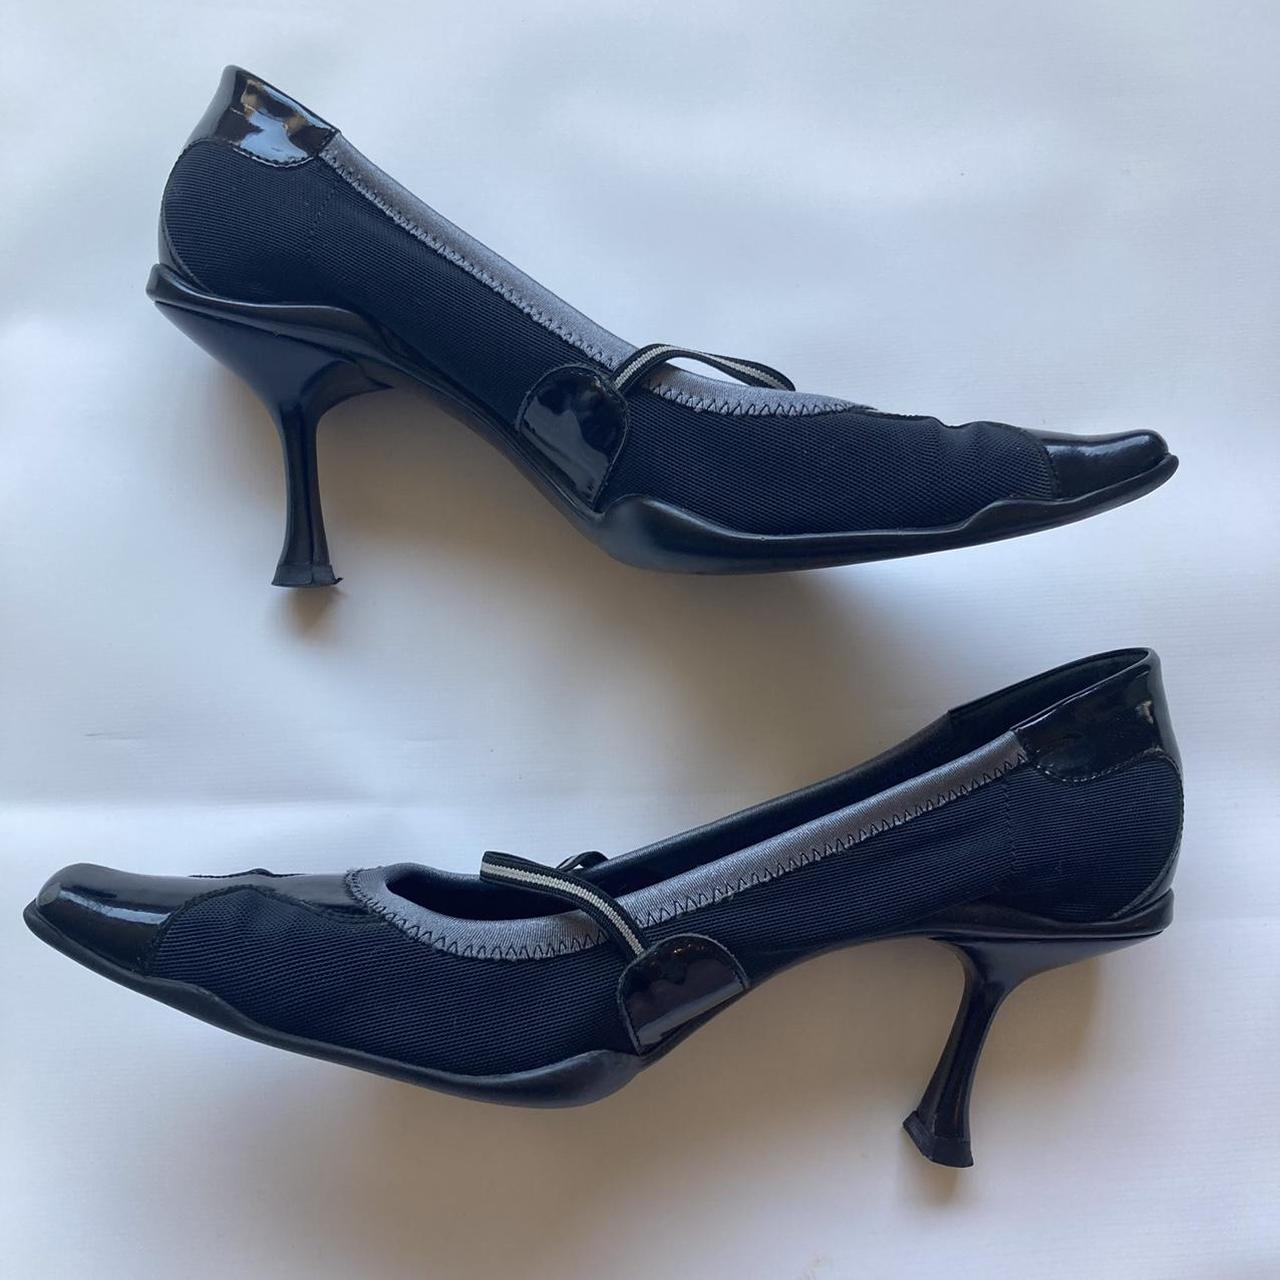 1999 vintage 90s Prada heels in mesh with a bit of a... - Depop